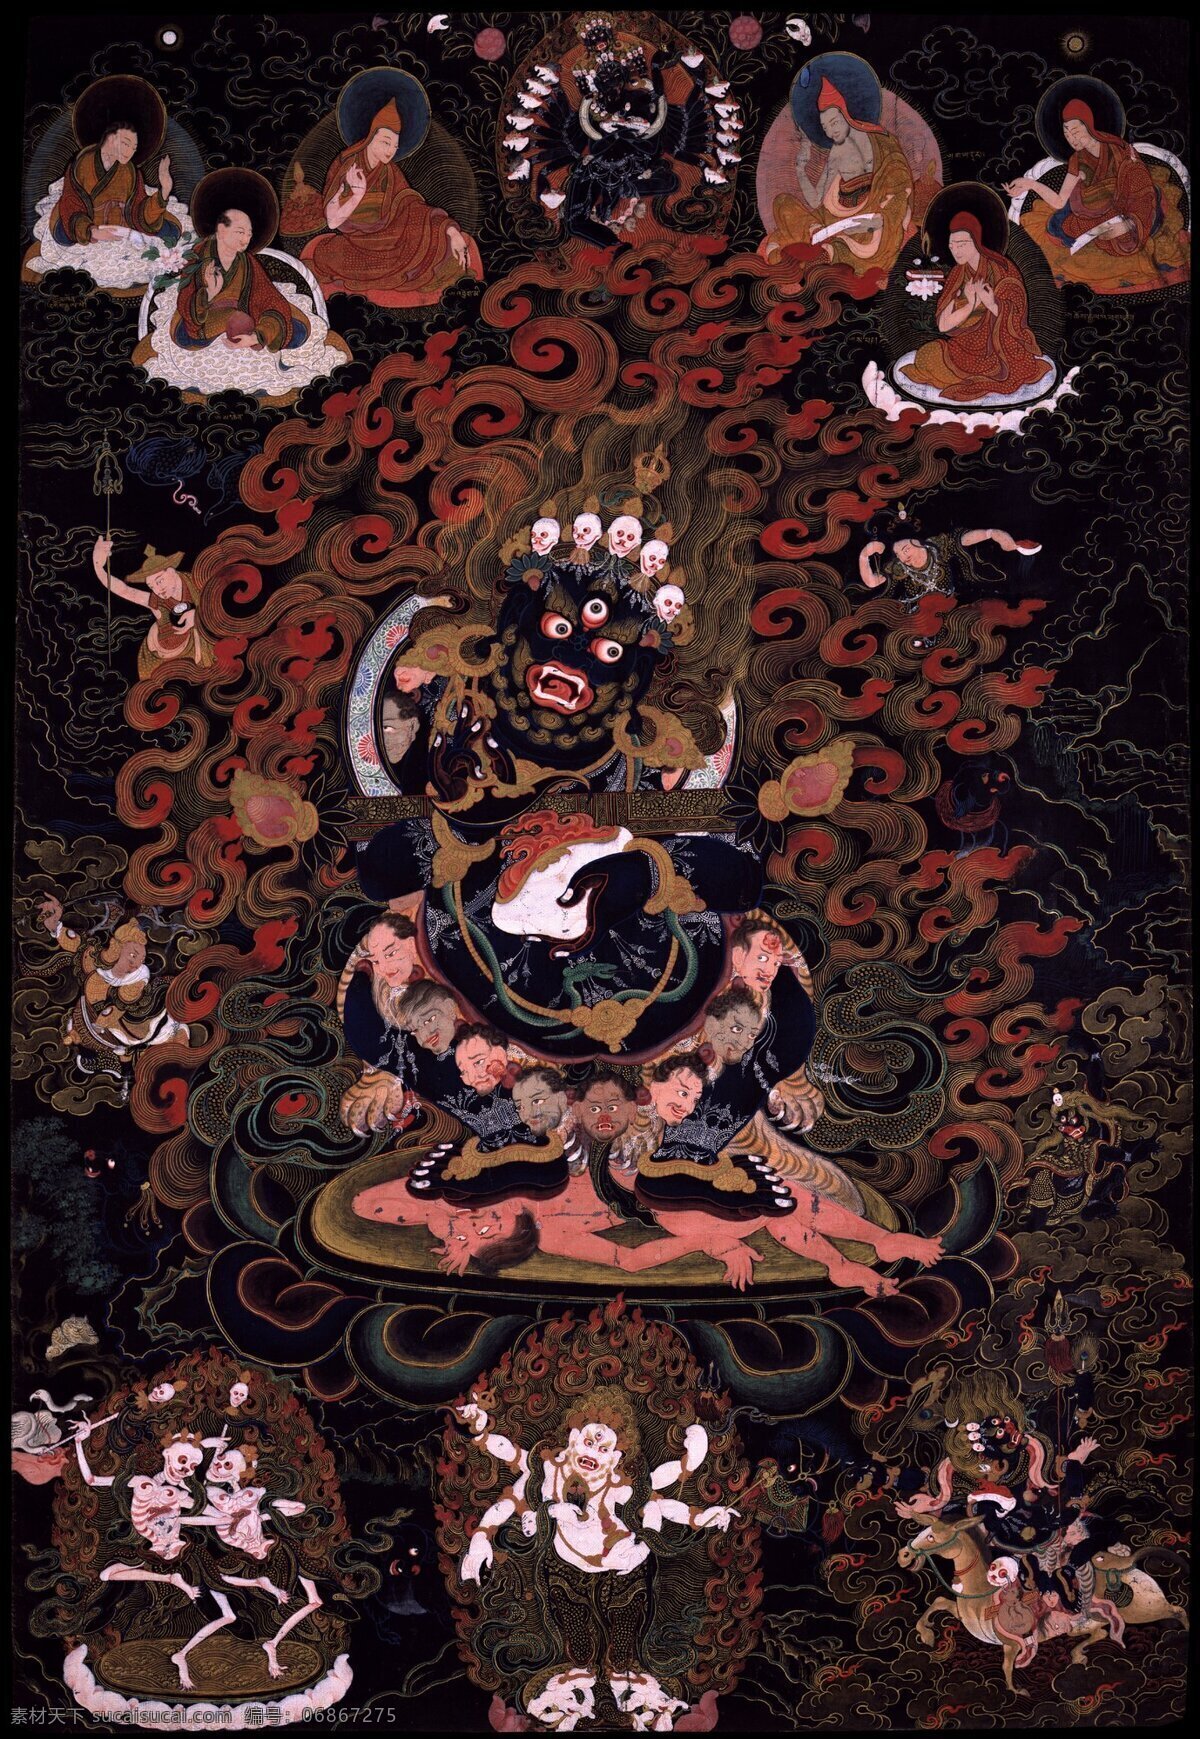 铁棒 祜 主 玛 嘎拉 唐卡 护法像 佛像 佛教 玛哈嘎拉 护法 藏传佛教 文化艺术 宗教信仰